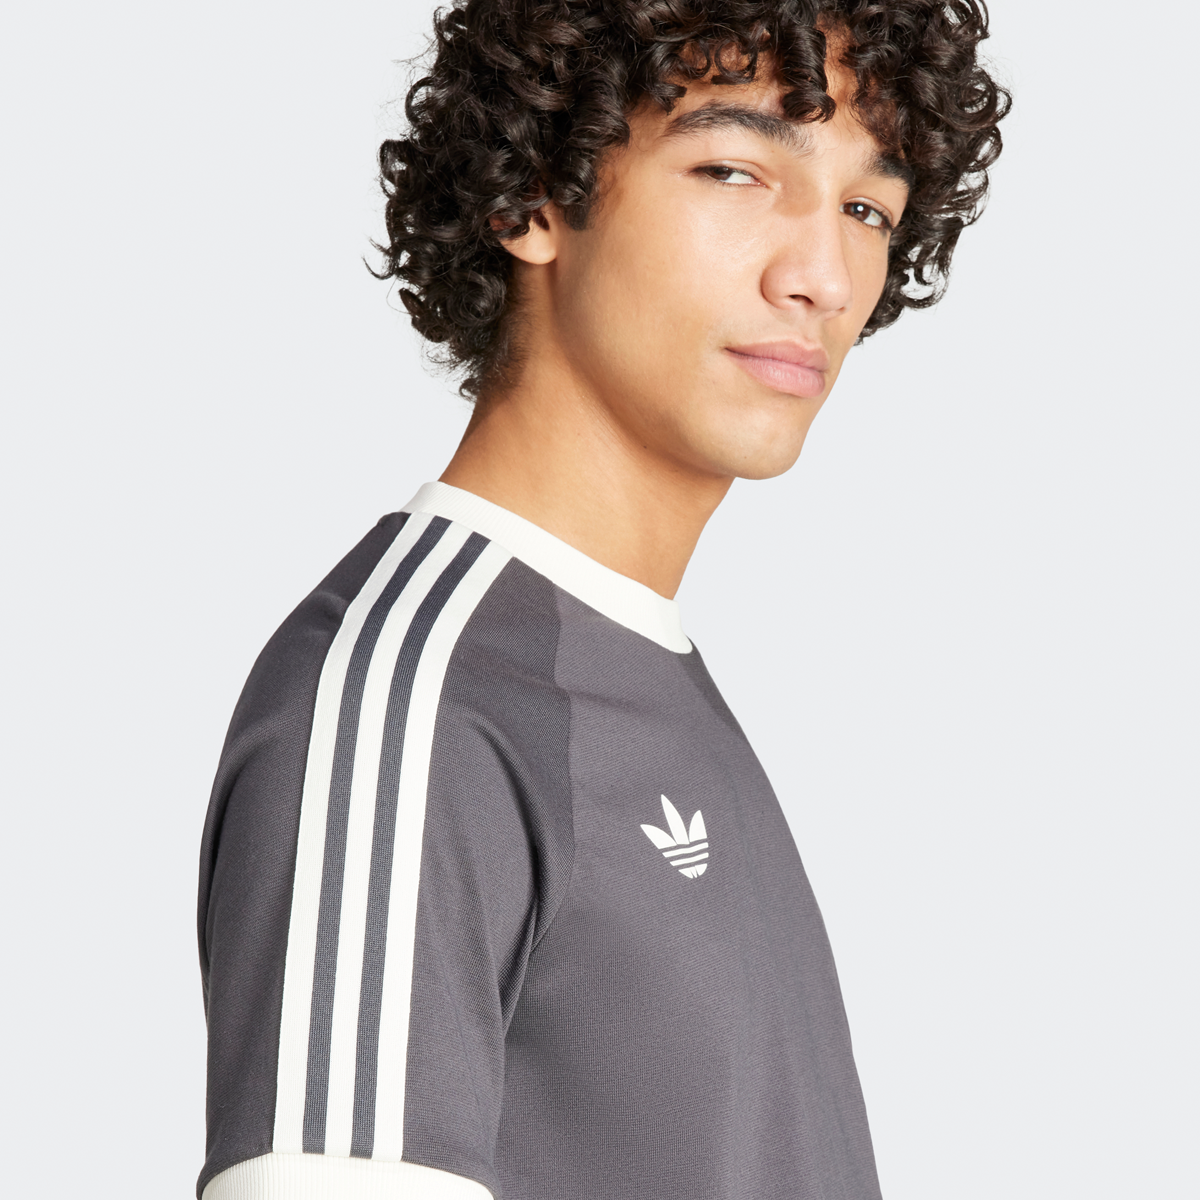 adidas Originals Dfb Duitsland 3-stripes T-shirt Football Pack T-shirts Heren utility black maat: S beschikbare maaten:S